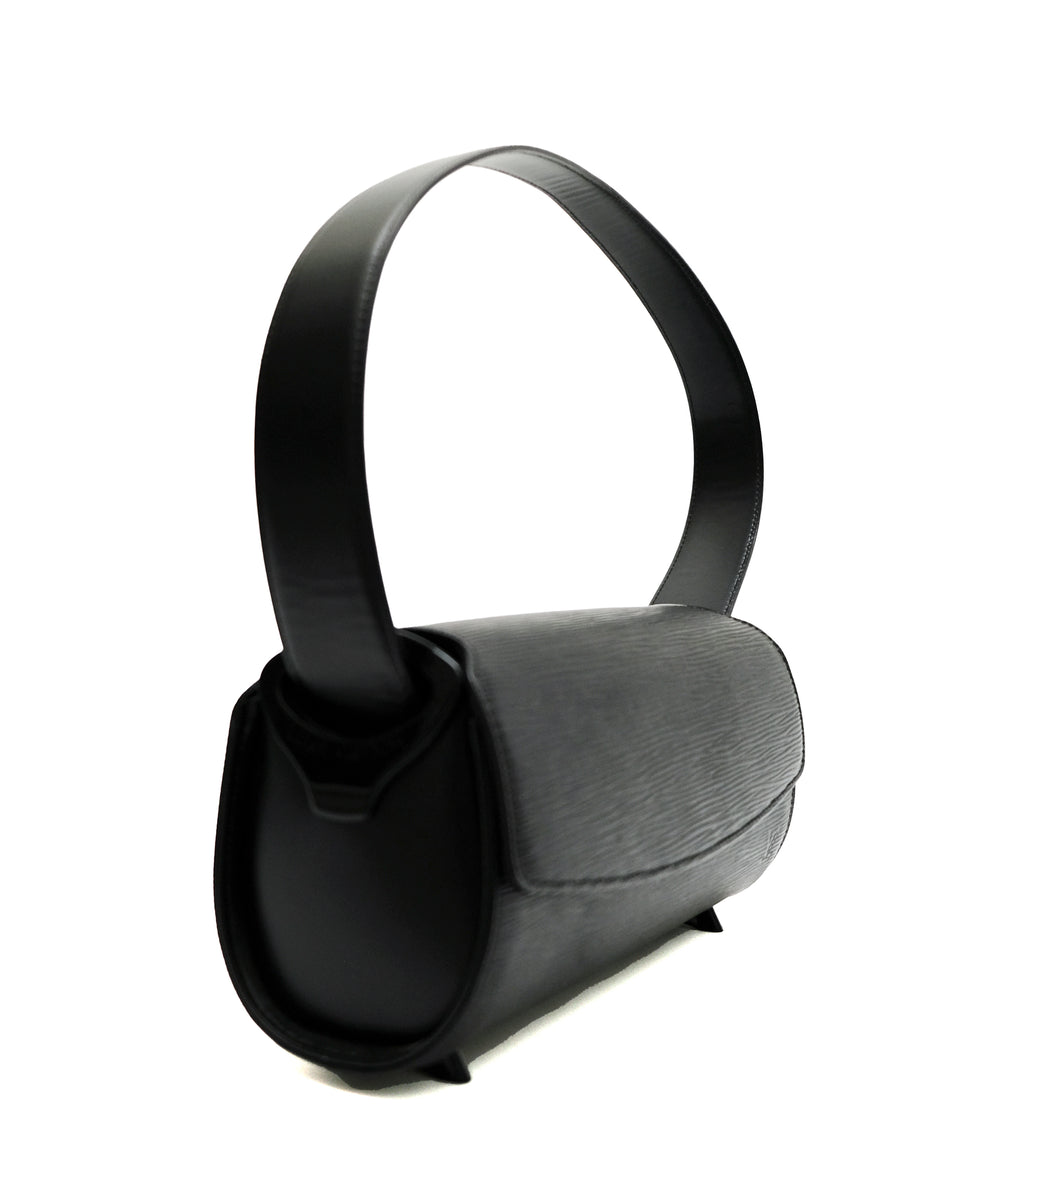 Louis Vuitton Nocturne Handbag 364599